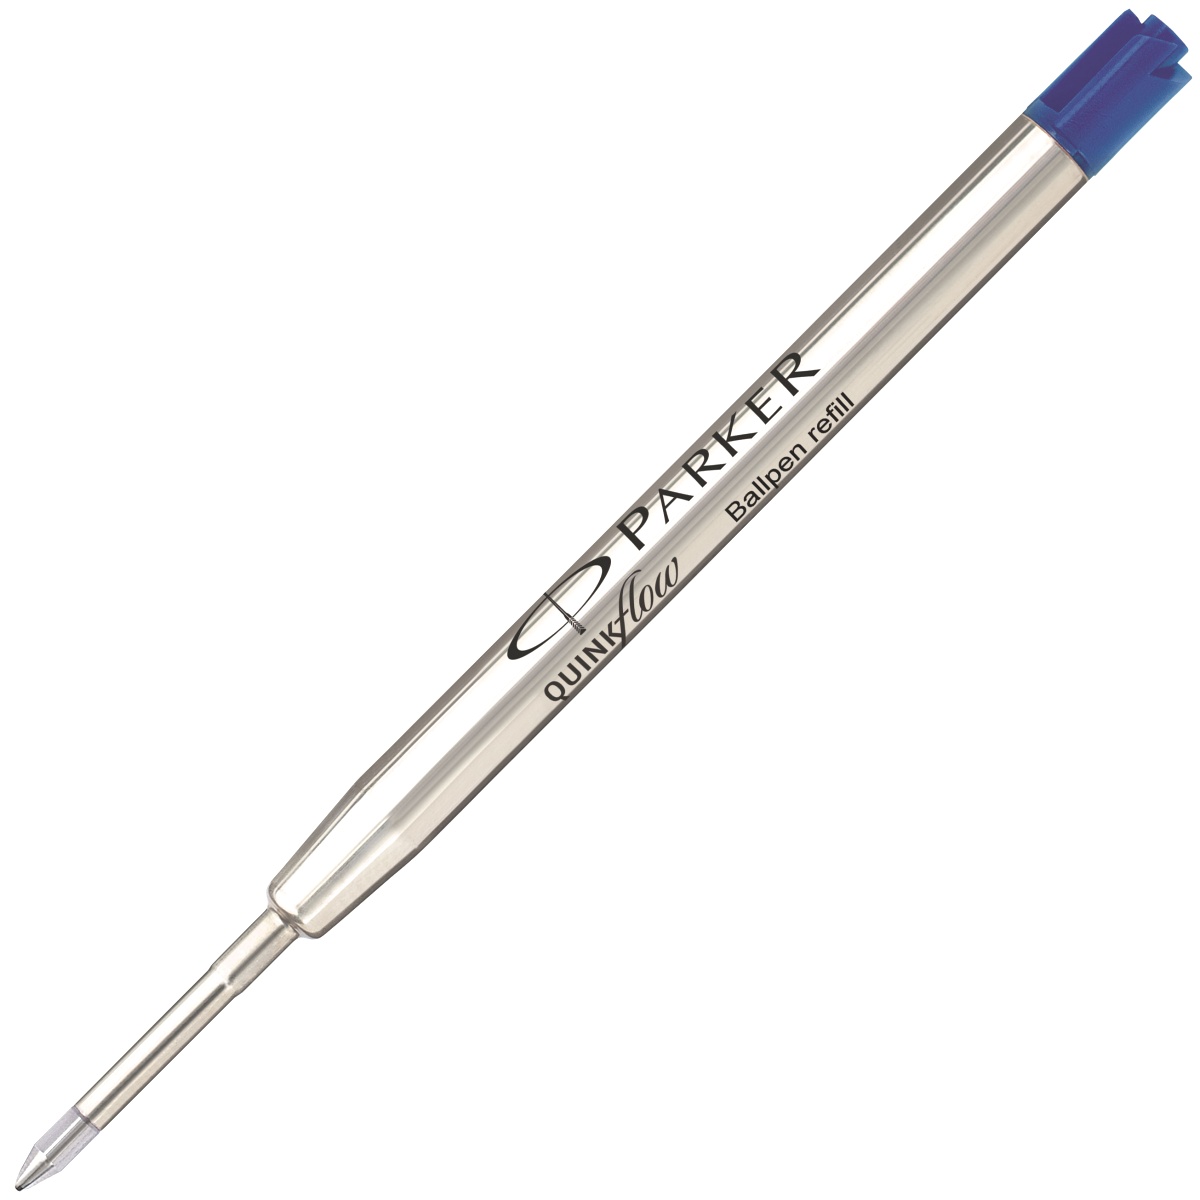 Набор: Гелевая ручка Parker Jotter + Синий шариковый стержень Parker QUINKFlow Z08 (F) + Фирменный пакет PARKER, фото 6